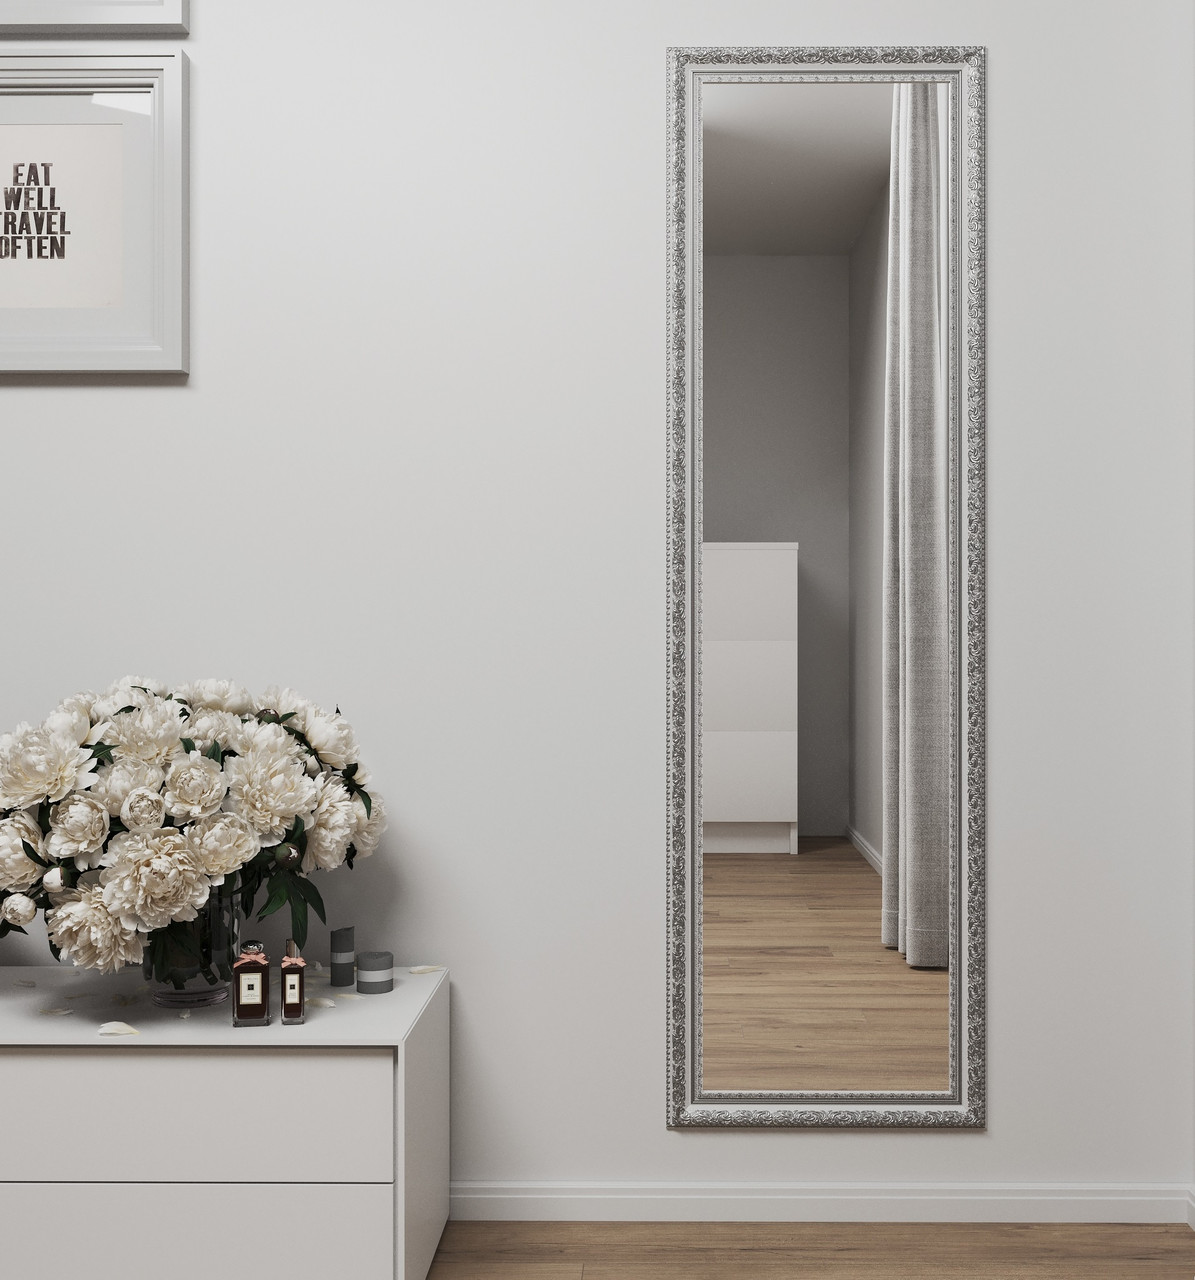 Біле дзеркало в повний зріст 170х50 з патиною срібла Black Mirror на стіну в коридор